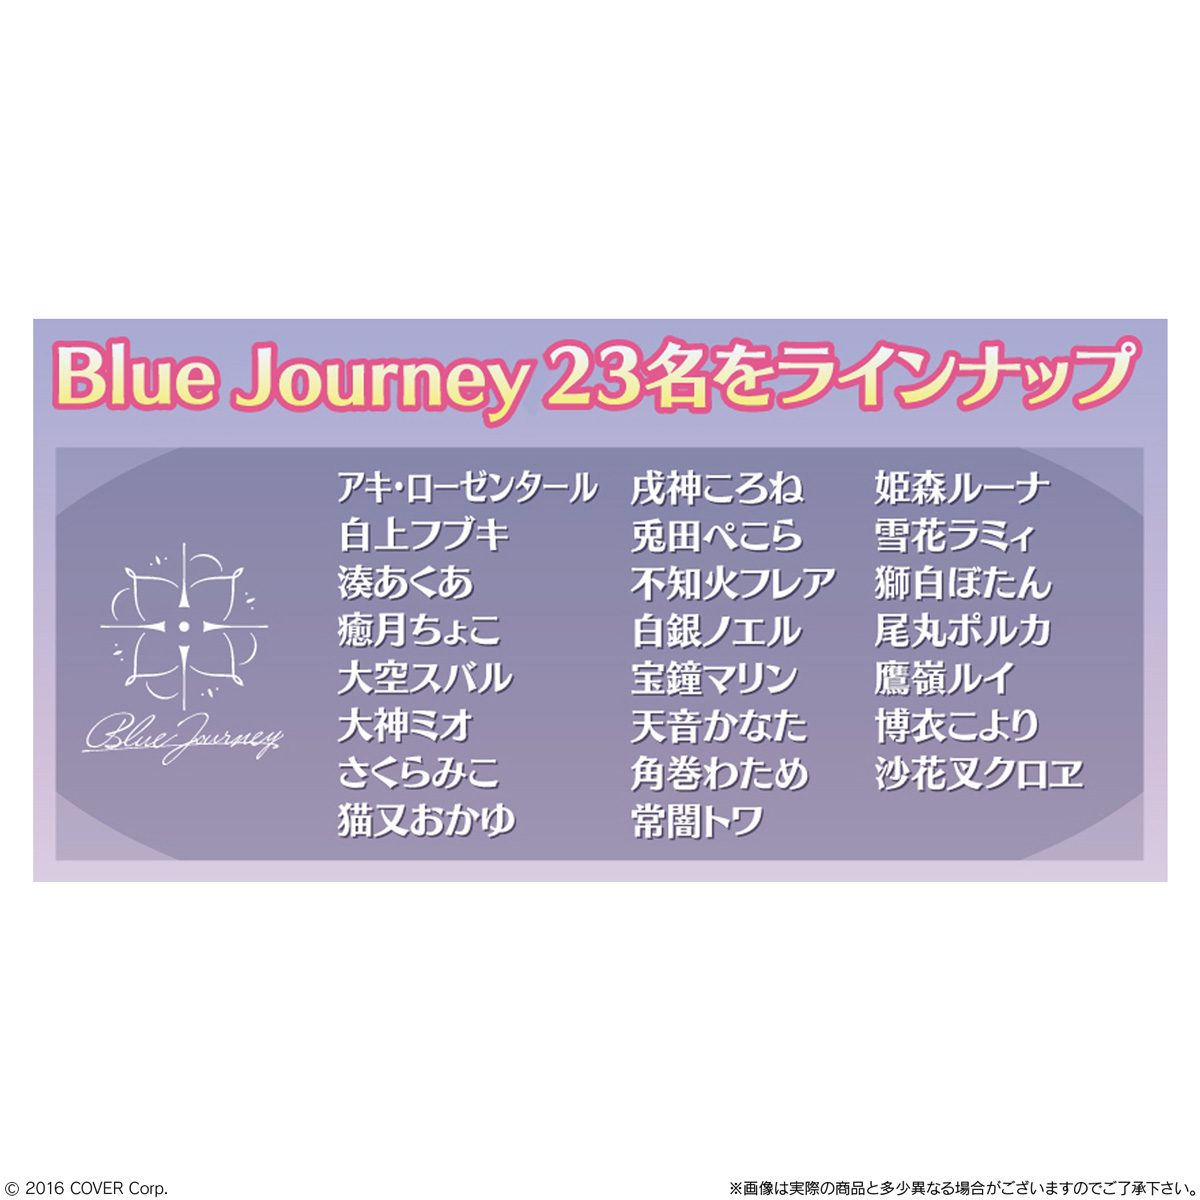 【食玩】ホロライブプロダクション『ホロライブ Blue Journey「夜明けのうた」 ステッカーキャンディ』20個入りBOX-003